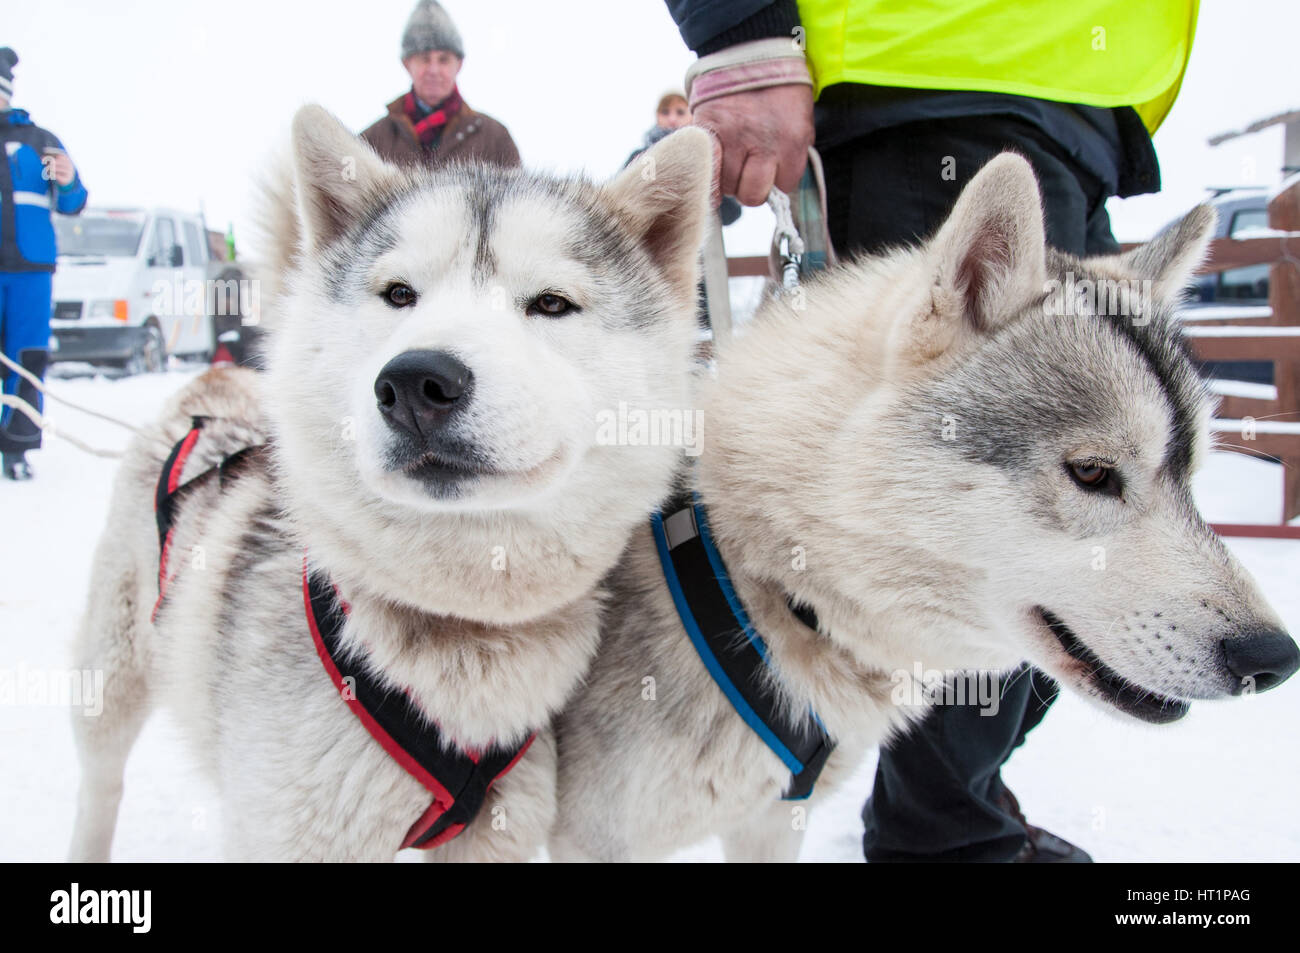 BELIS, Romania - 6 febbraio: Samoiedo cani pronte per lo start della prima slitta trainata da cani Racing Contest. Il 6 febbraio 2015 a Belis, Romania Foto Stock